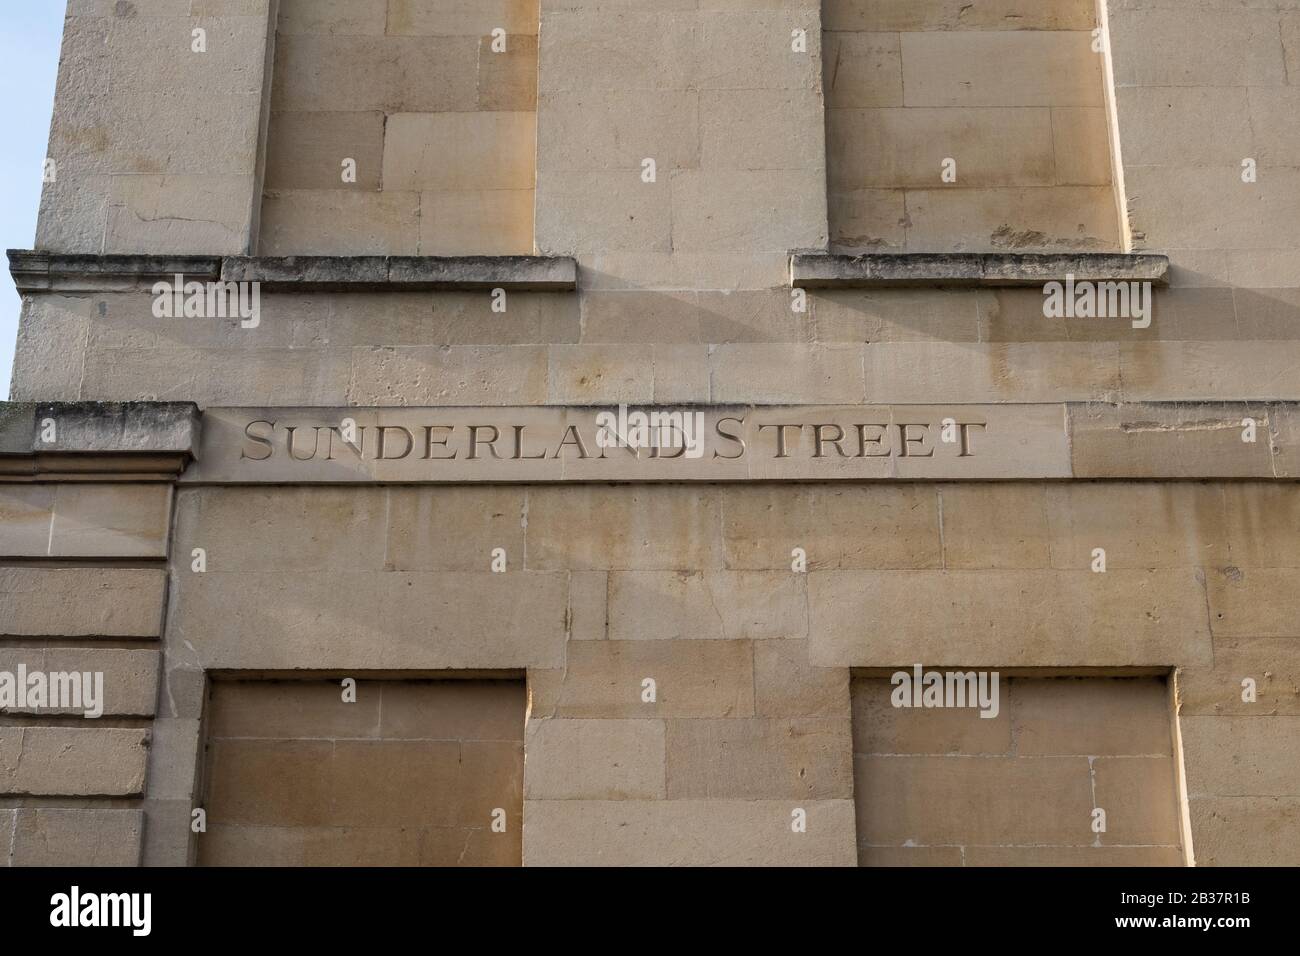 Sunderland Street à Bath, Somerset a le nom de rue gravé en pierre sur le côté de la maison Banque D'Images